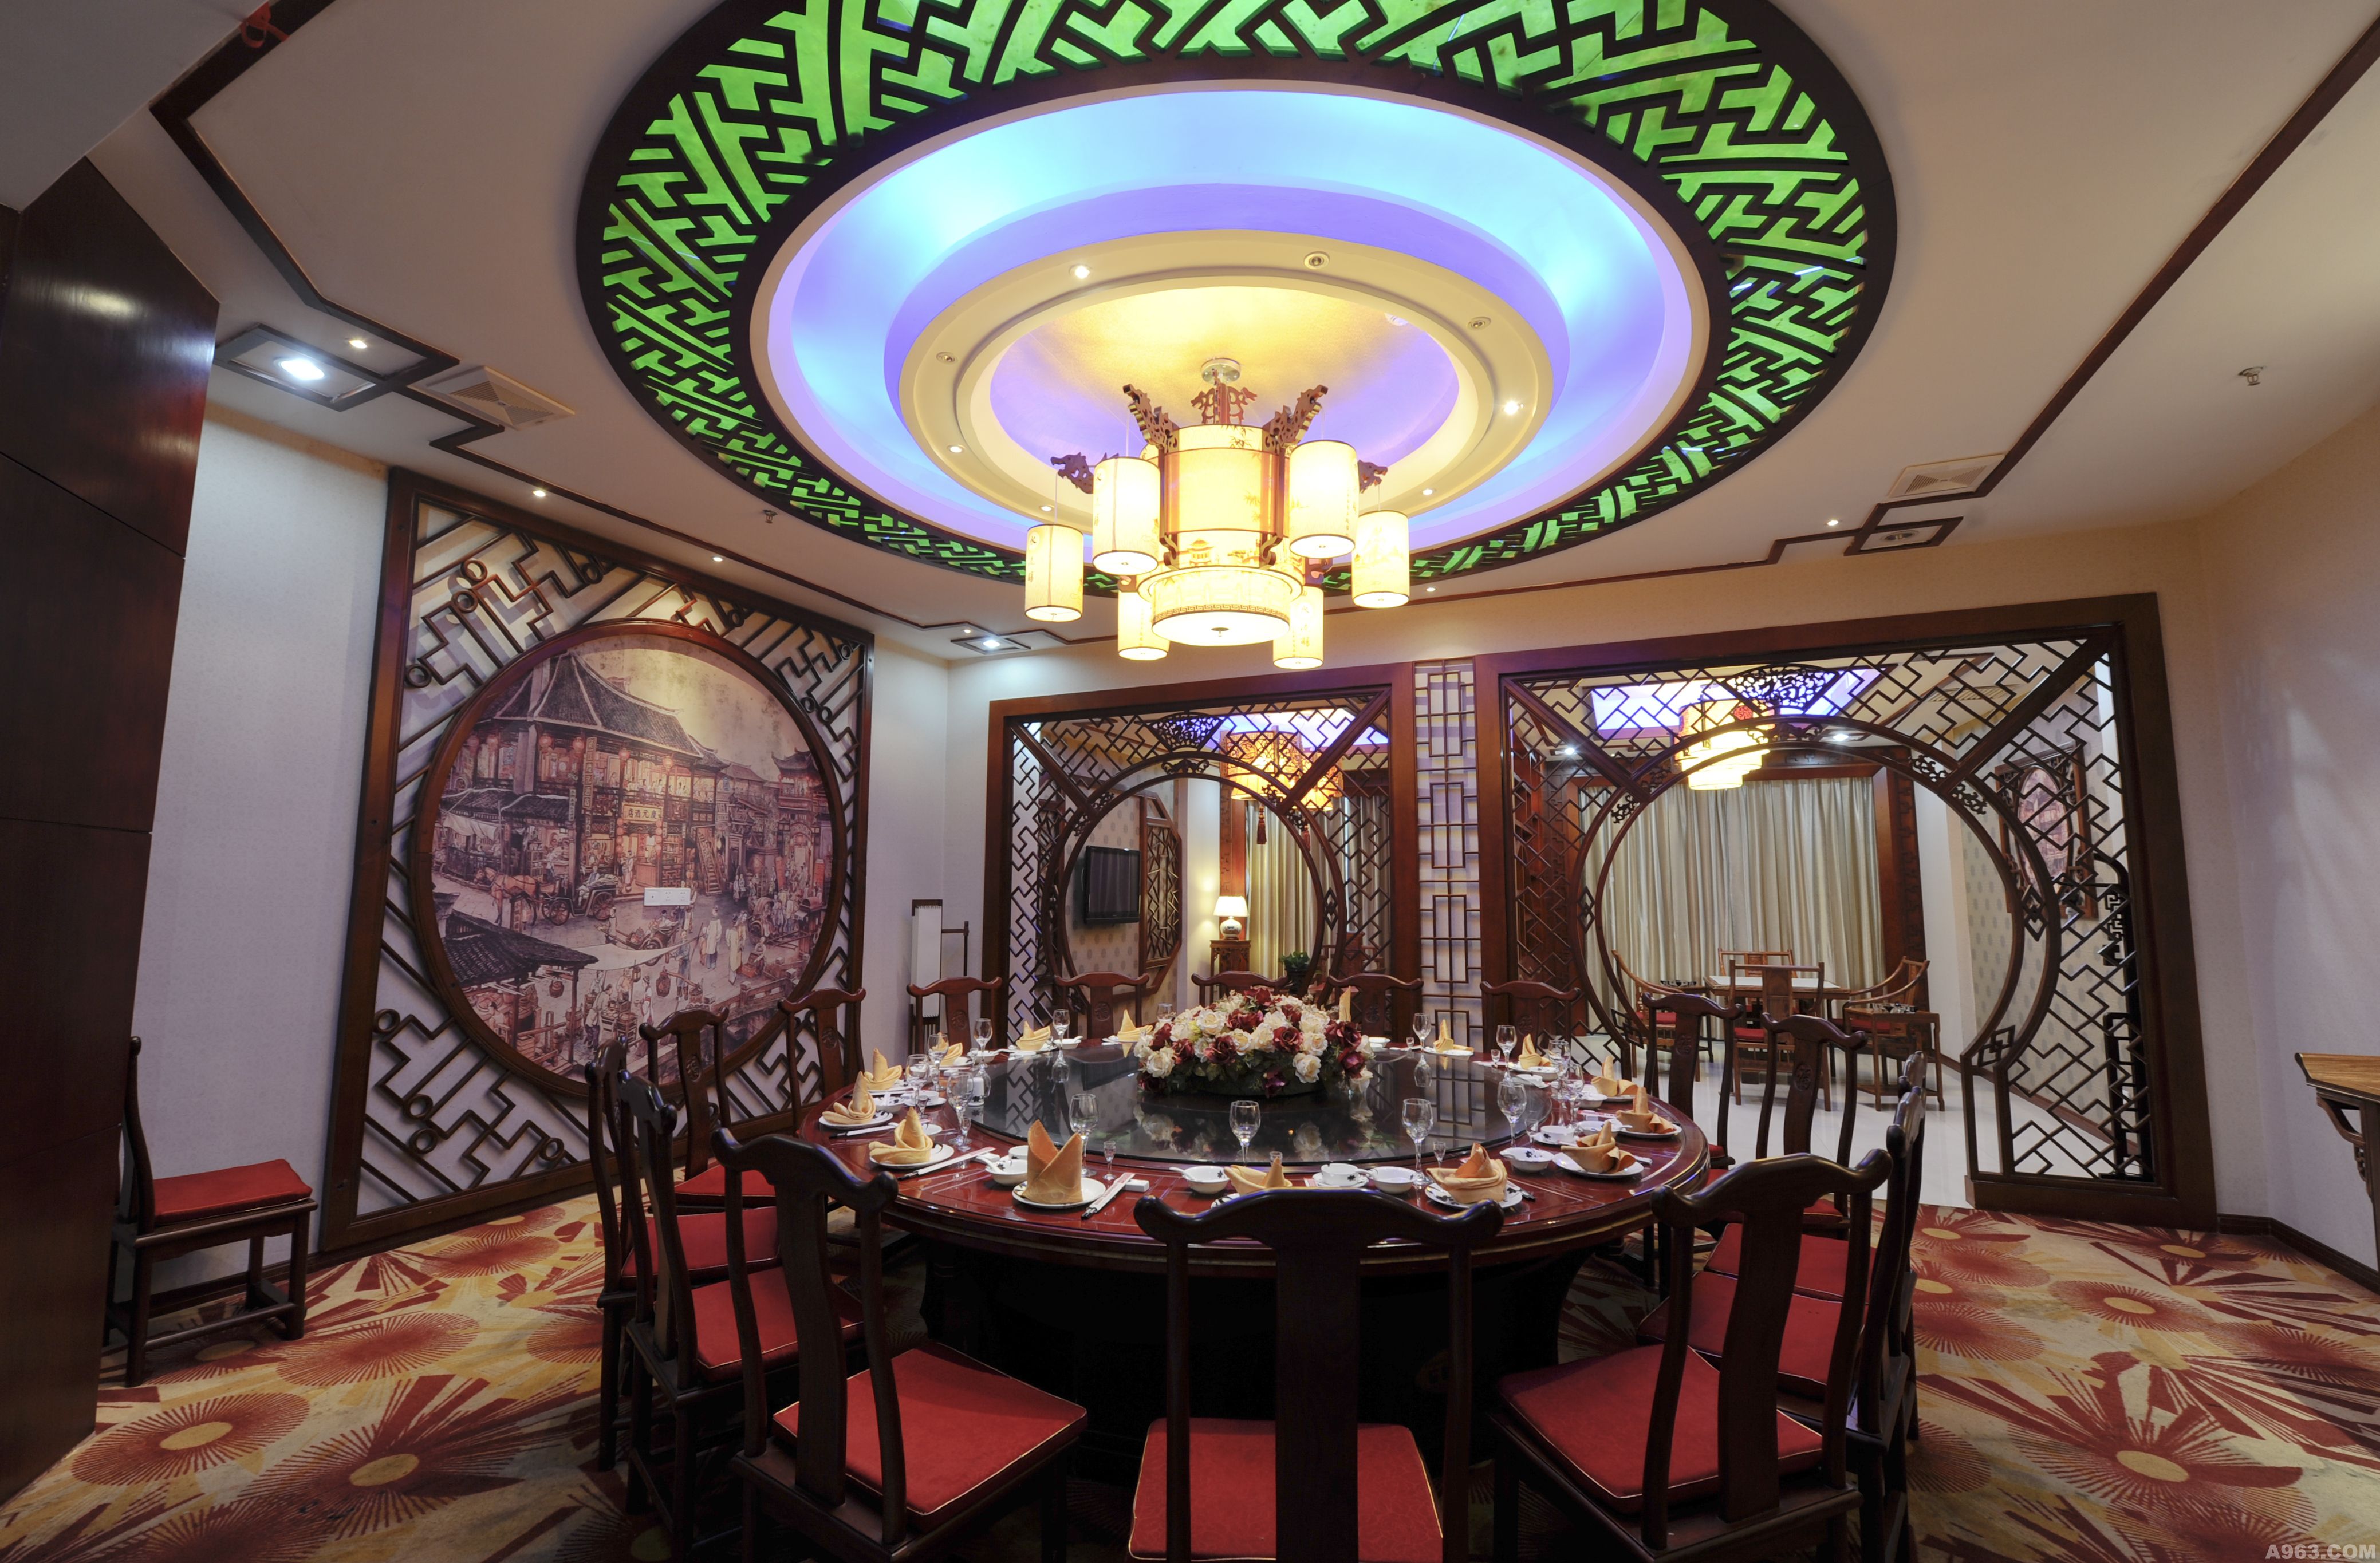 深圳市韵城装饰设计有限公司 中餐厅内各包厢均以当地名胜风景为概念